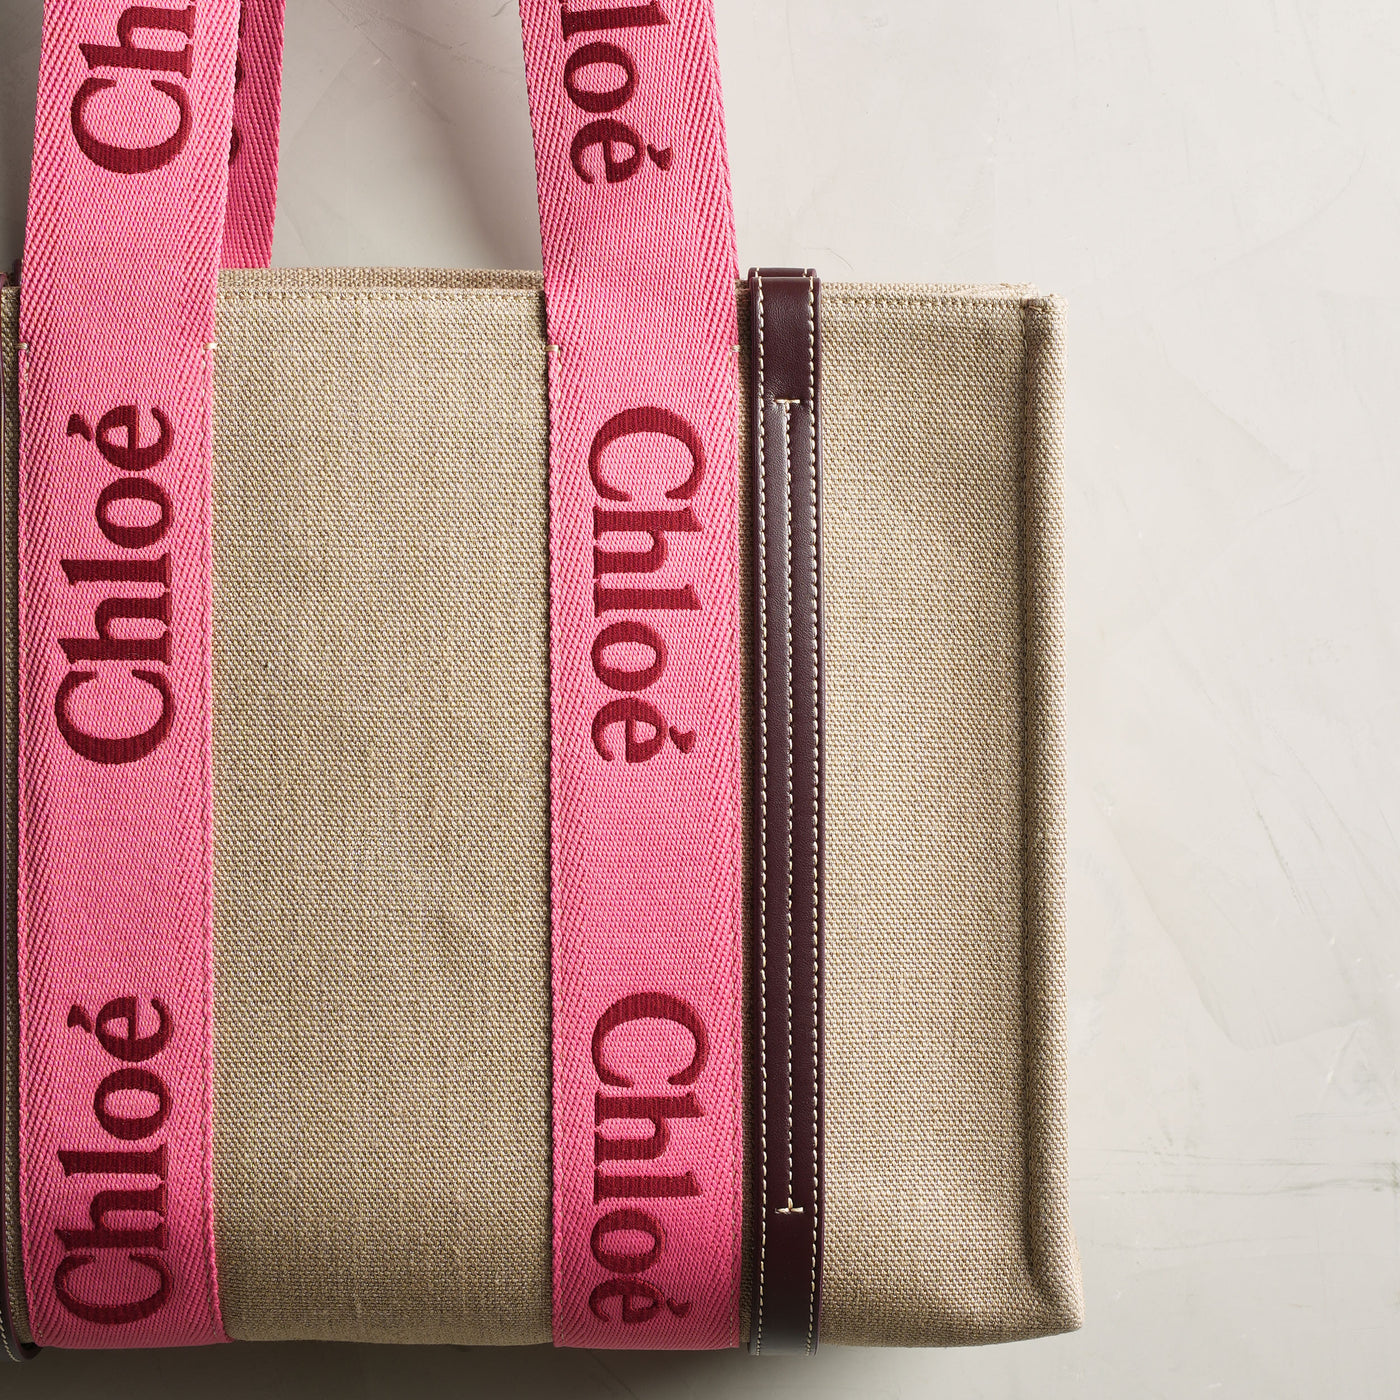 CHLOÉ woody pink medium tote bag